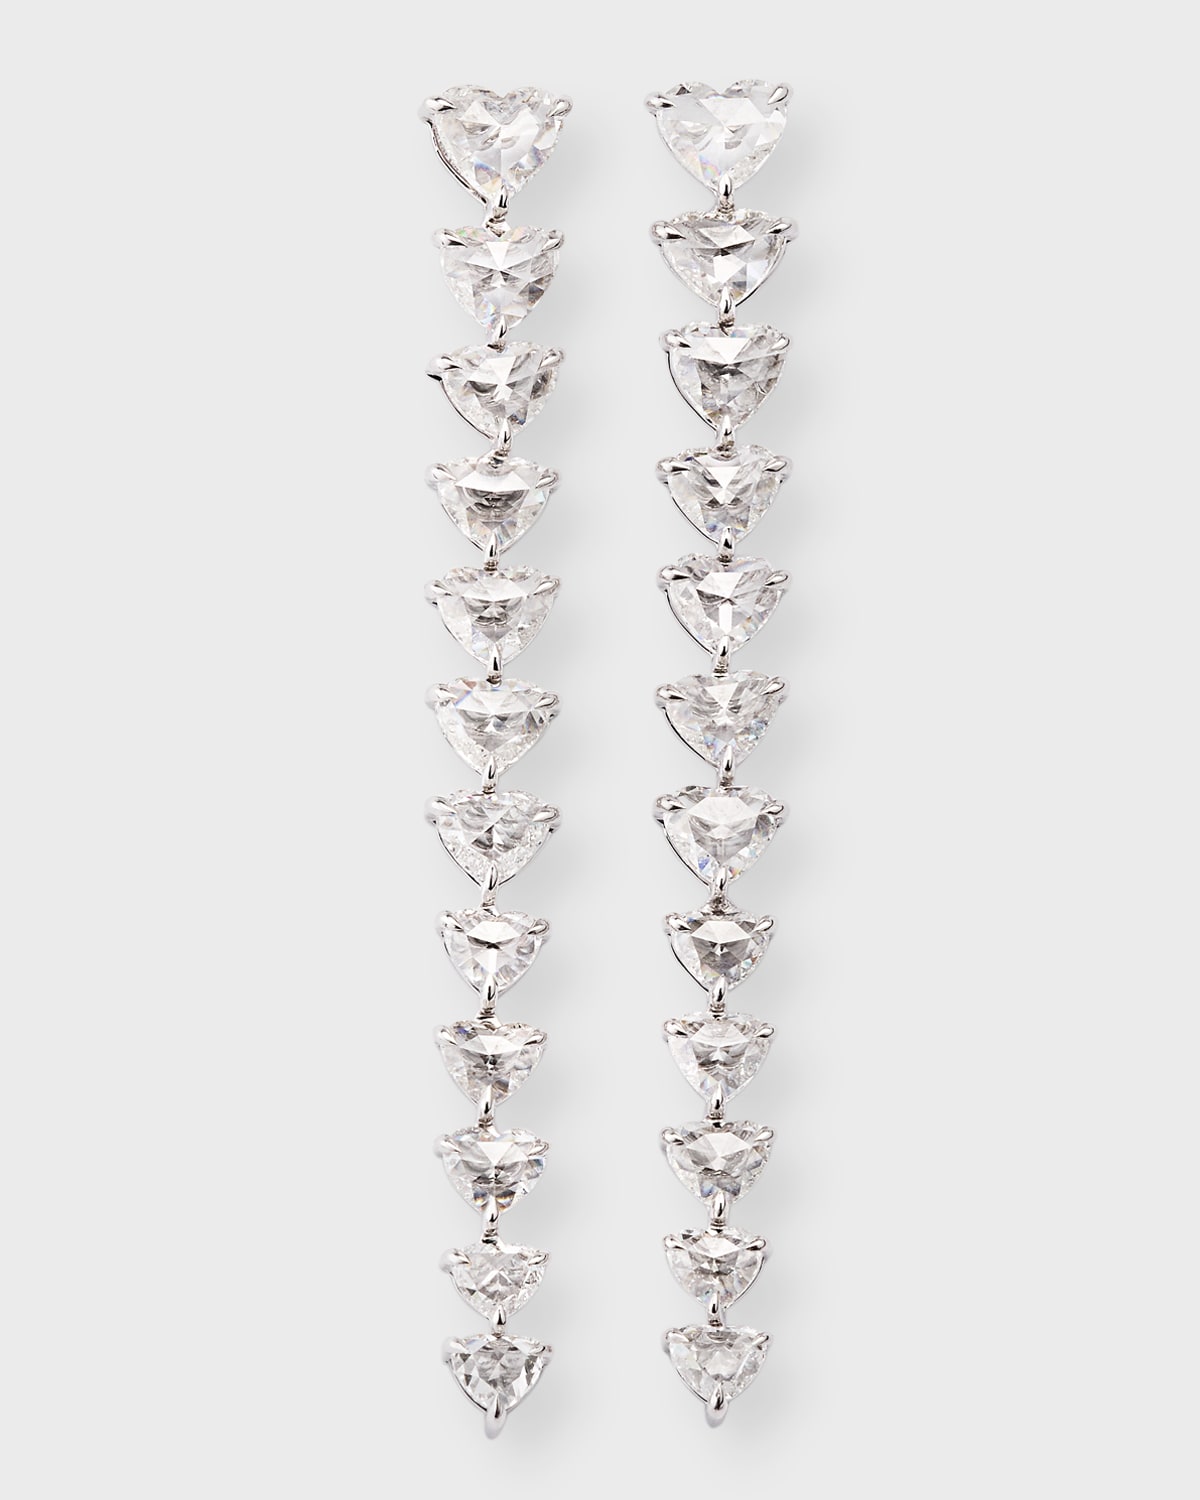 64 Facets 18k White Gold Heart Diamond Drop Earrings, 2"l